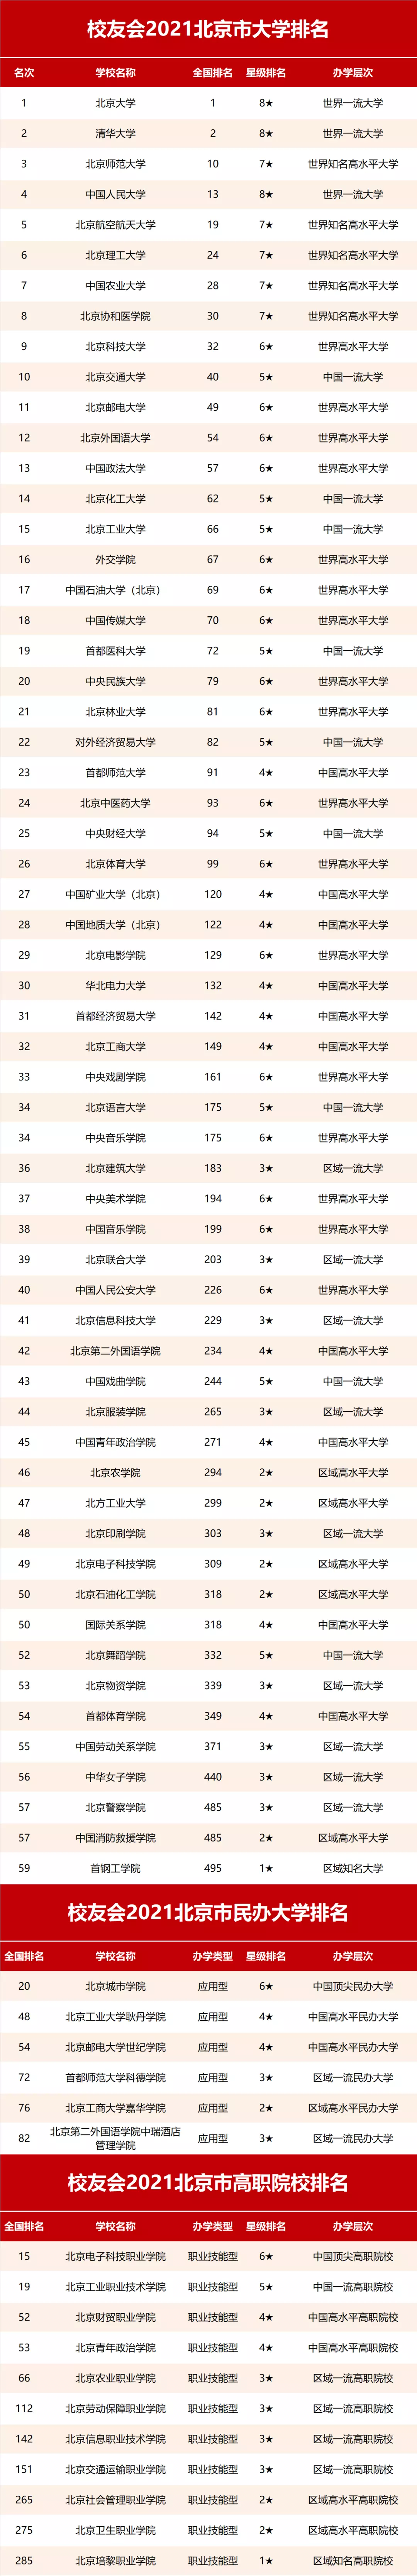 3、全国经济排行榜:年中国百强城市排行榜发布，的是哪个城市呢？